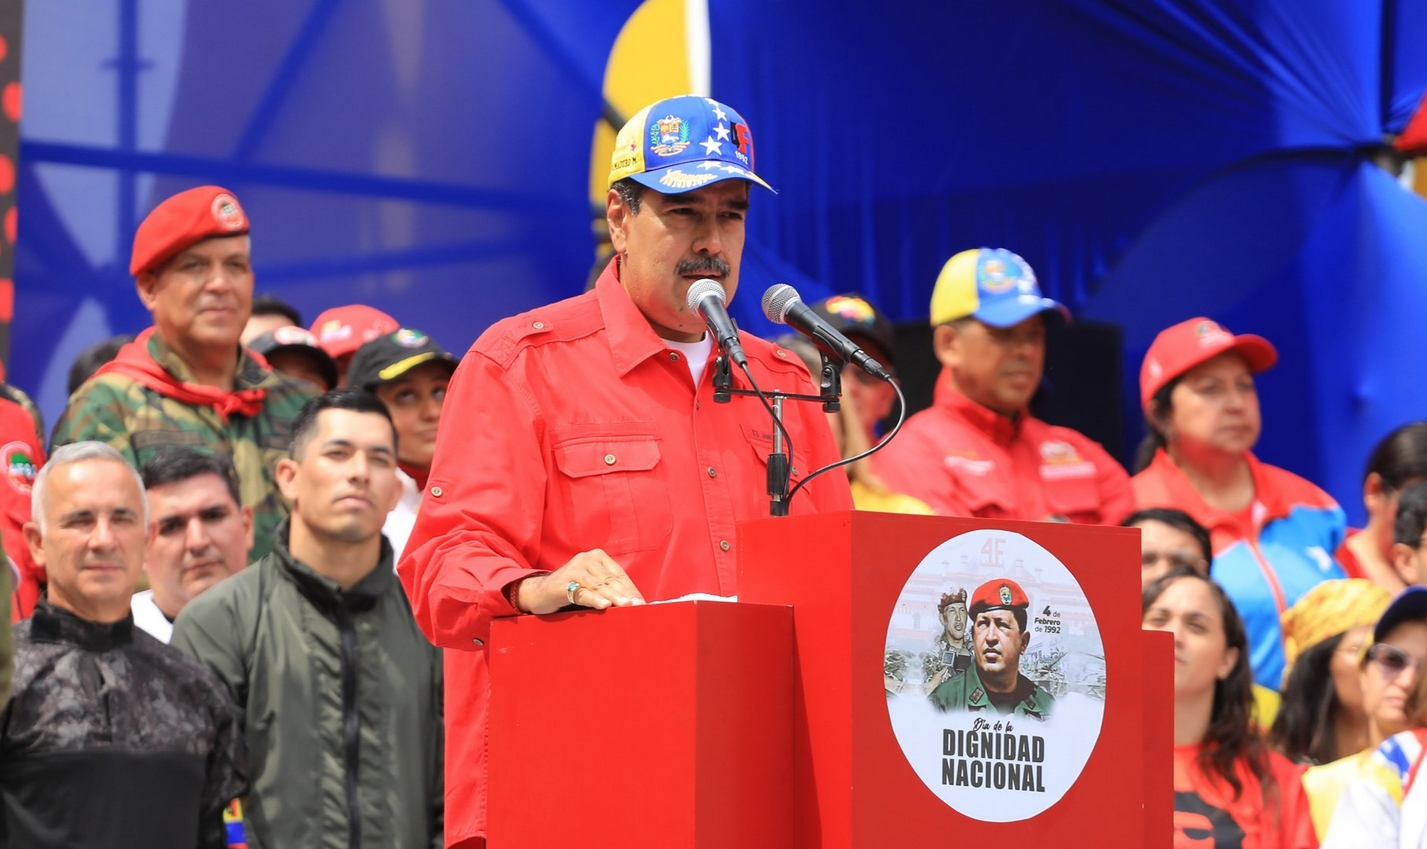 Segundo Maduro, planos extremistas continuam ativos e são apoiados pela Casa Branca, que se nega a aceitar a institucionalidade venezuelana